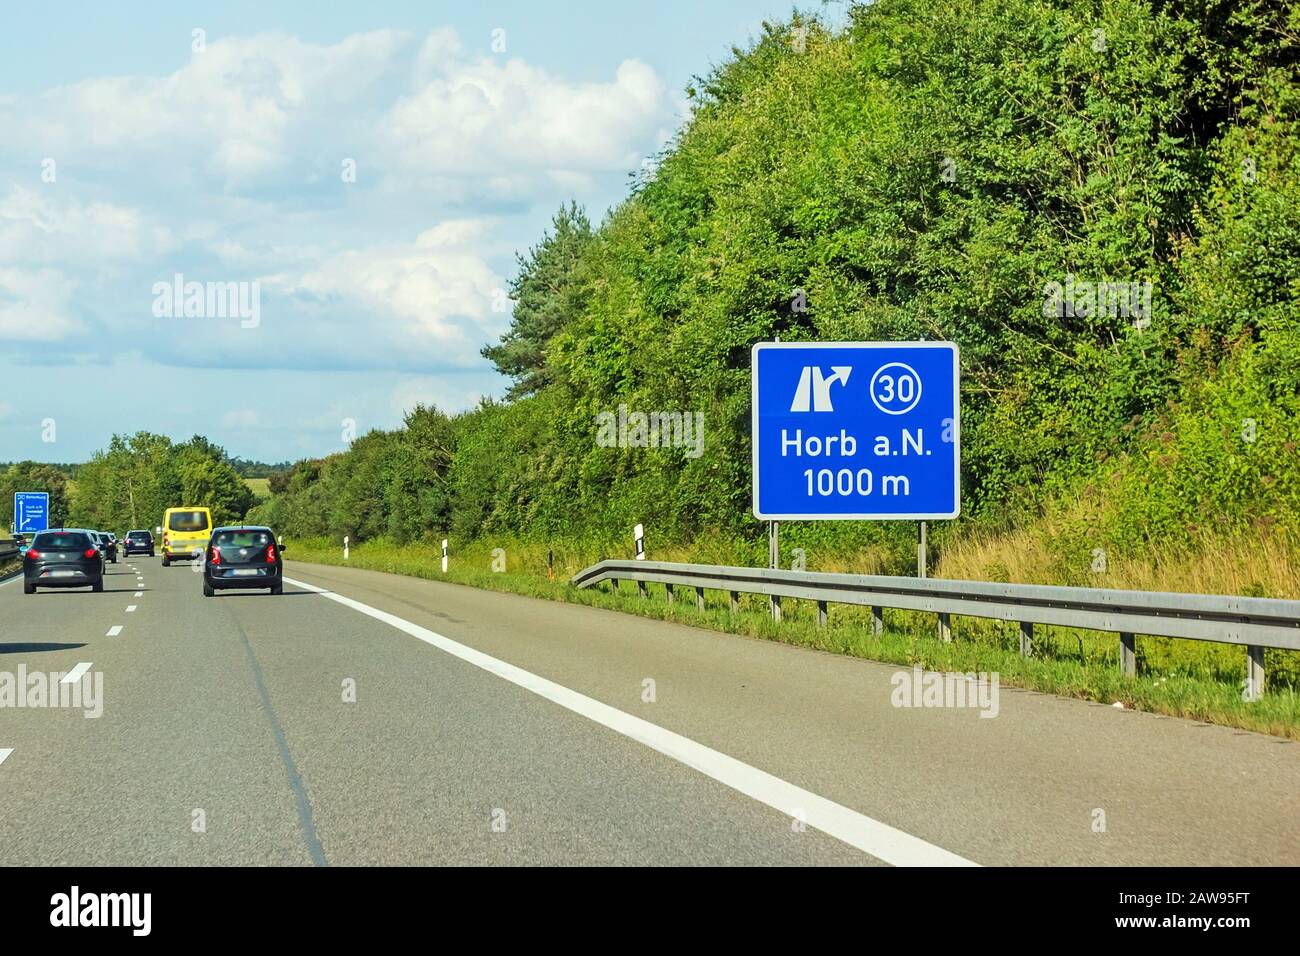 Folgen Sie der Beschilderung auf der Autobahn 81 / A 81 / E 531 in Richtung Stuttgart - Ausfahrt in die Stadt Horb am Neckar Stockfoto